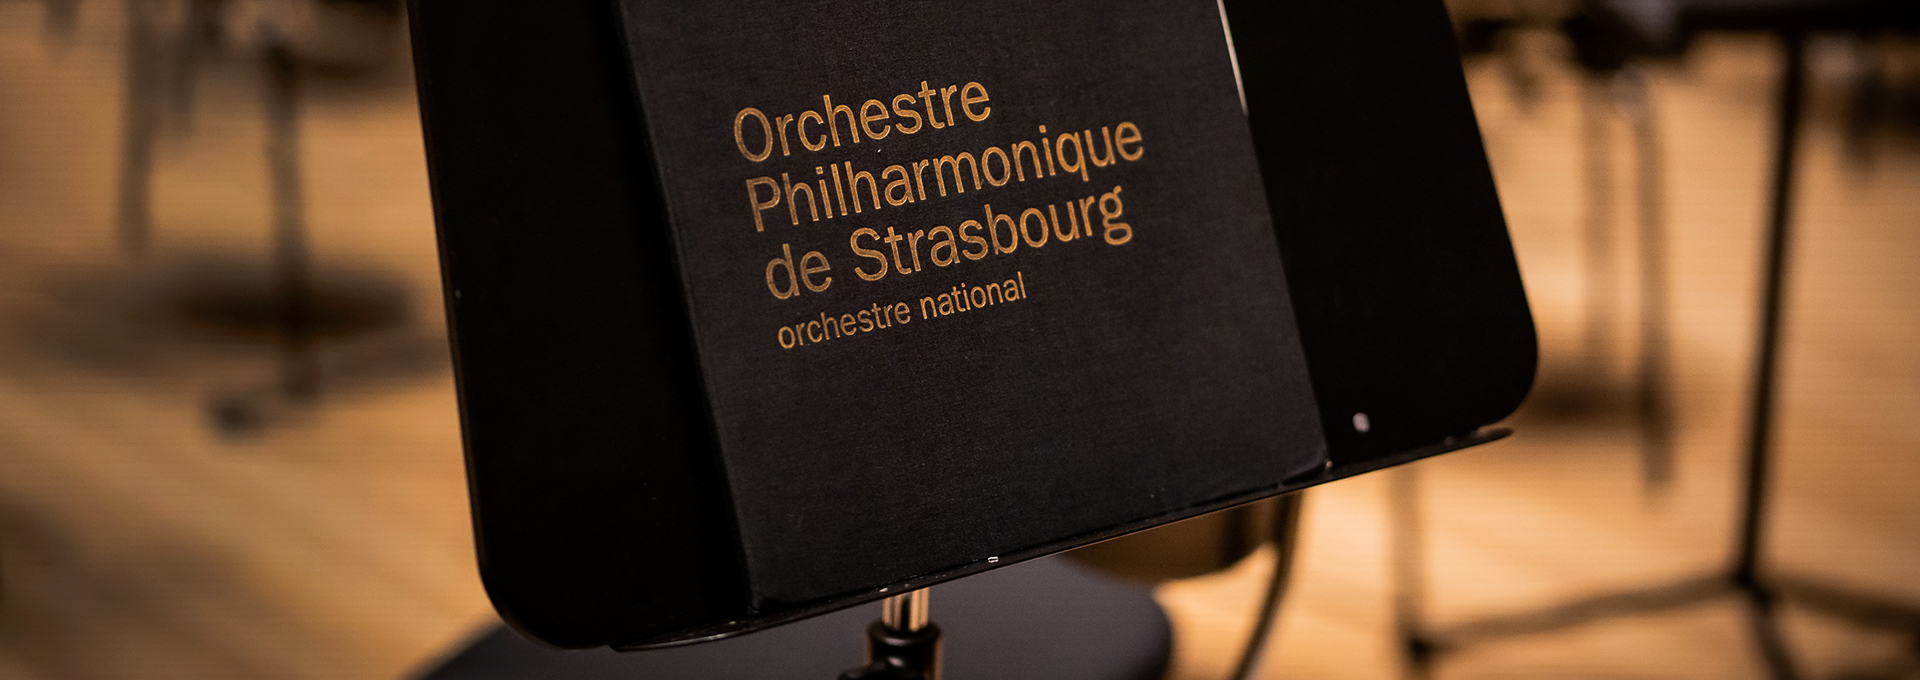 Francesco Tristano / Orchestre Philharmonique de Strasbourg © Sebastian Madej